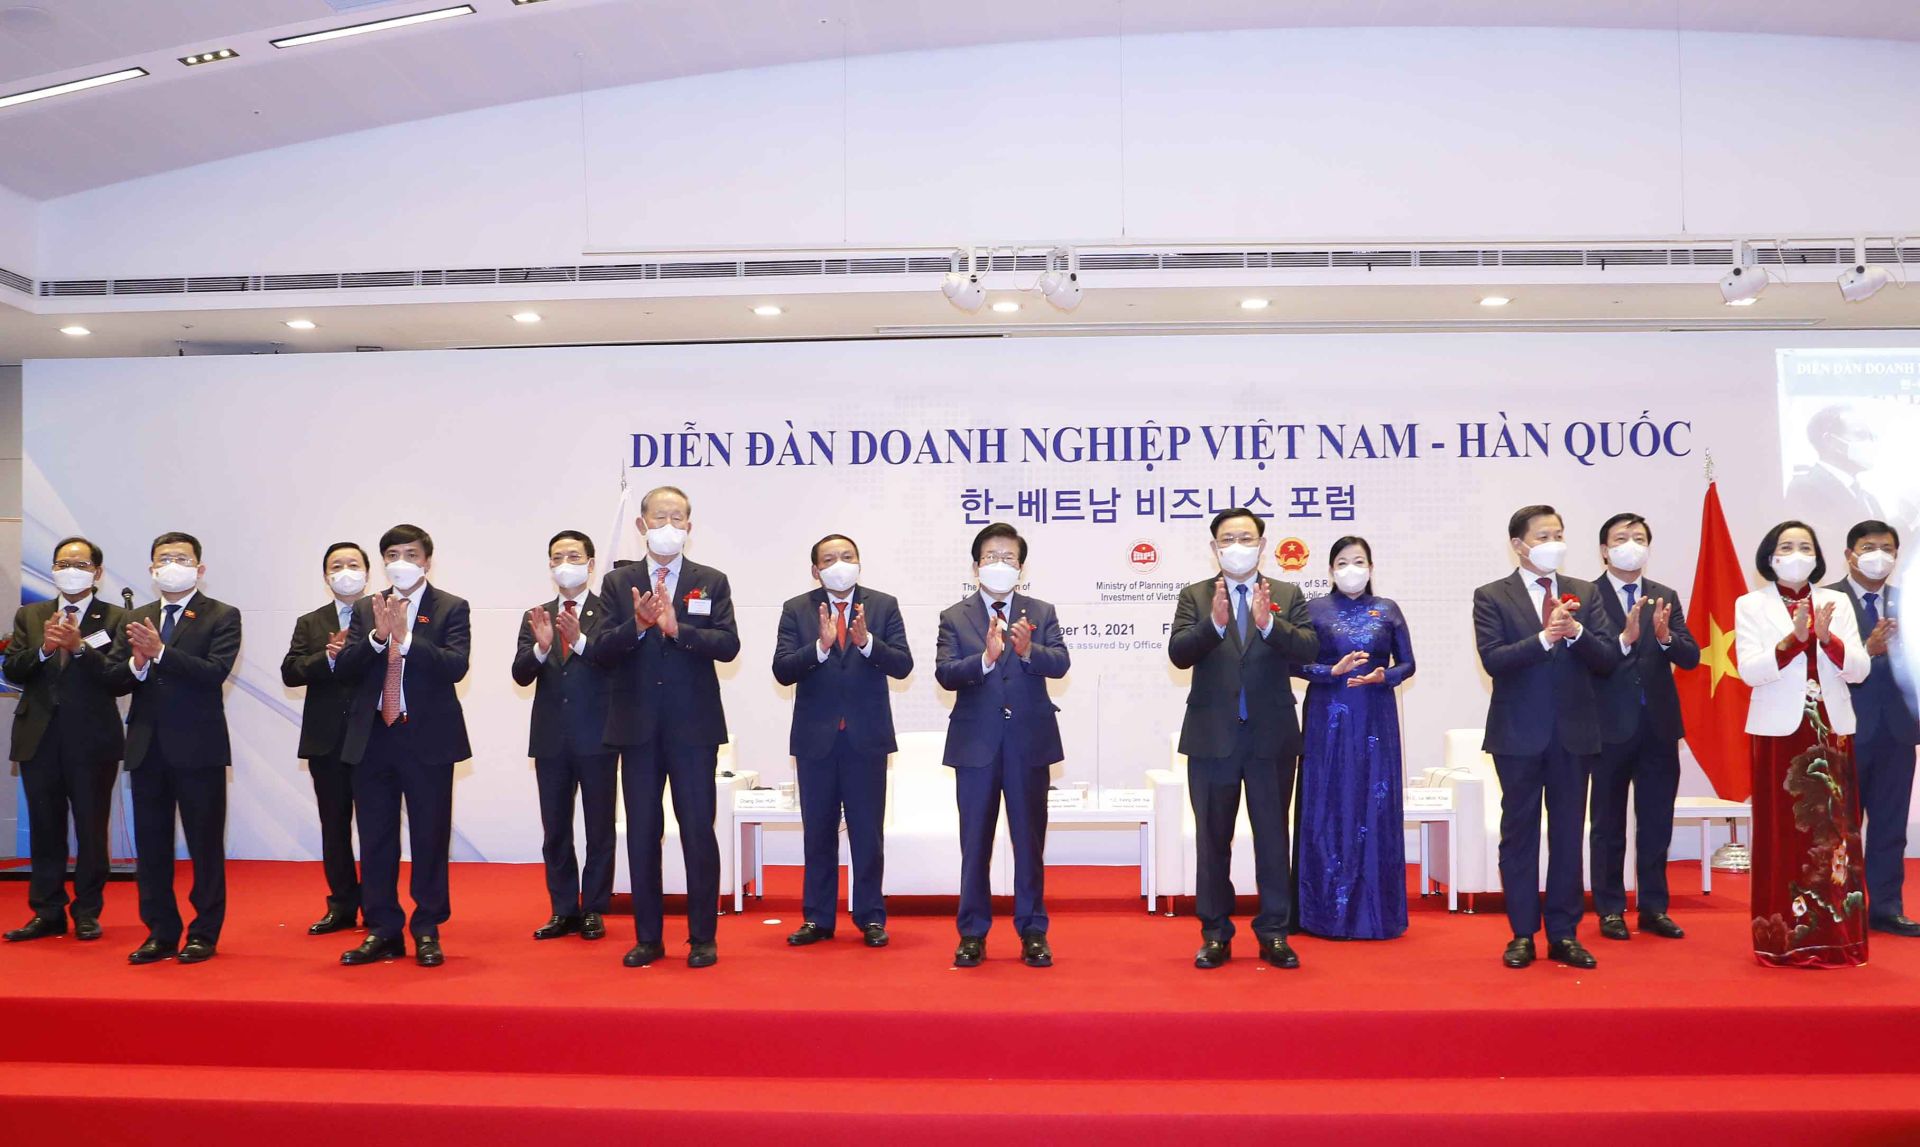 Chủ tịch Quốc hội Vương Đình Huệ và Chủ tịch Quốc hội Hàn Quốc cùng các đại biểu tham dự Diễn đàn Doanh nghiệp Việt Nam - Hàn Quốc